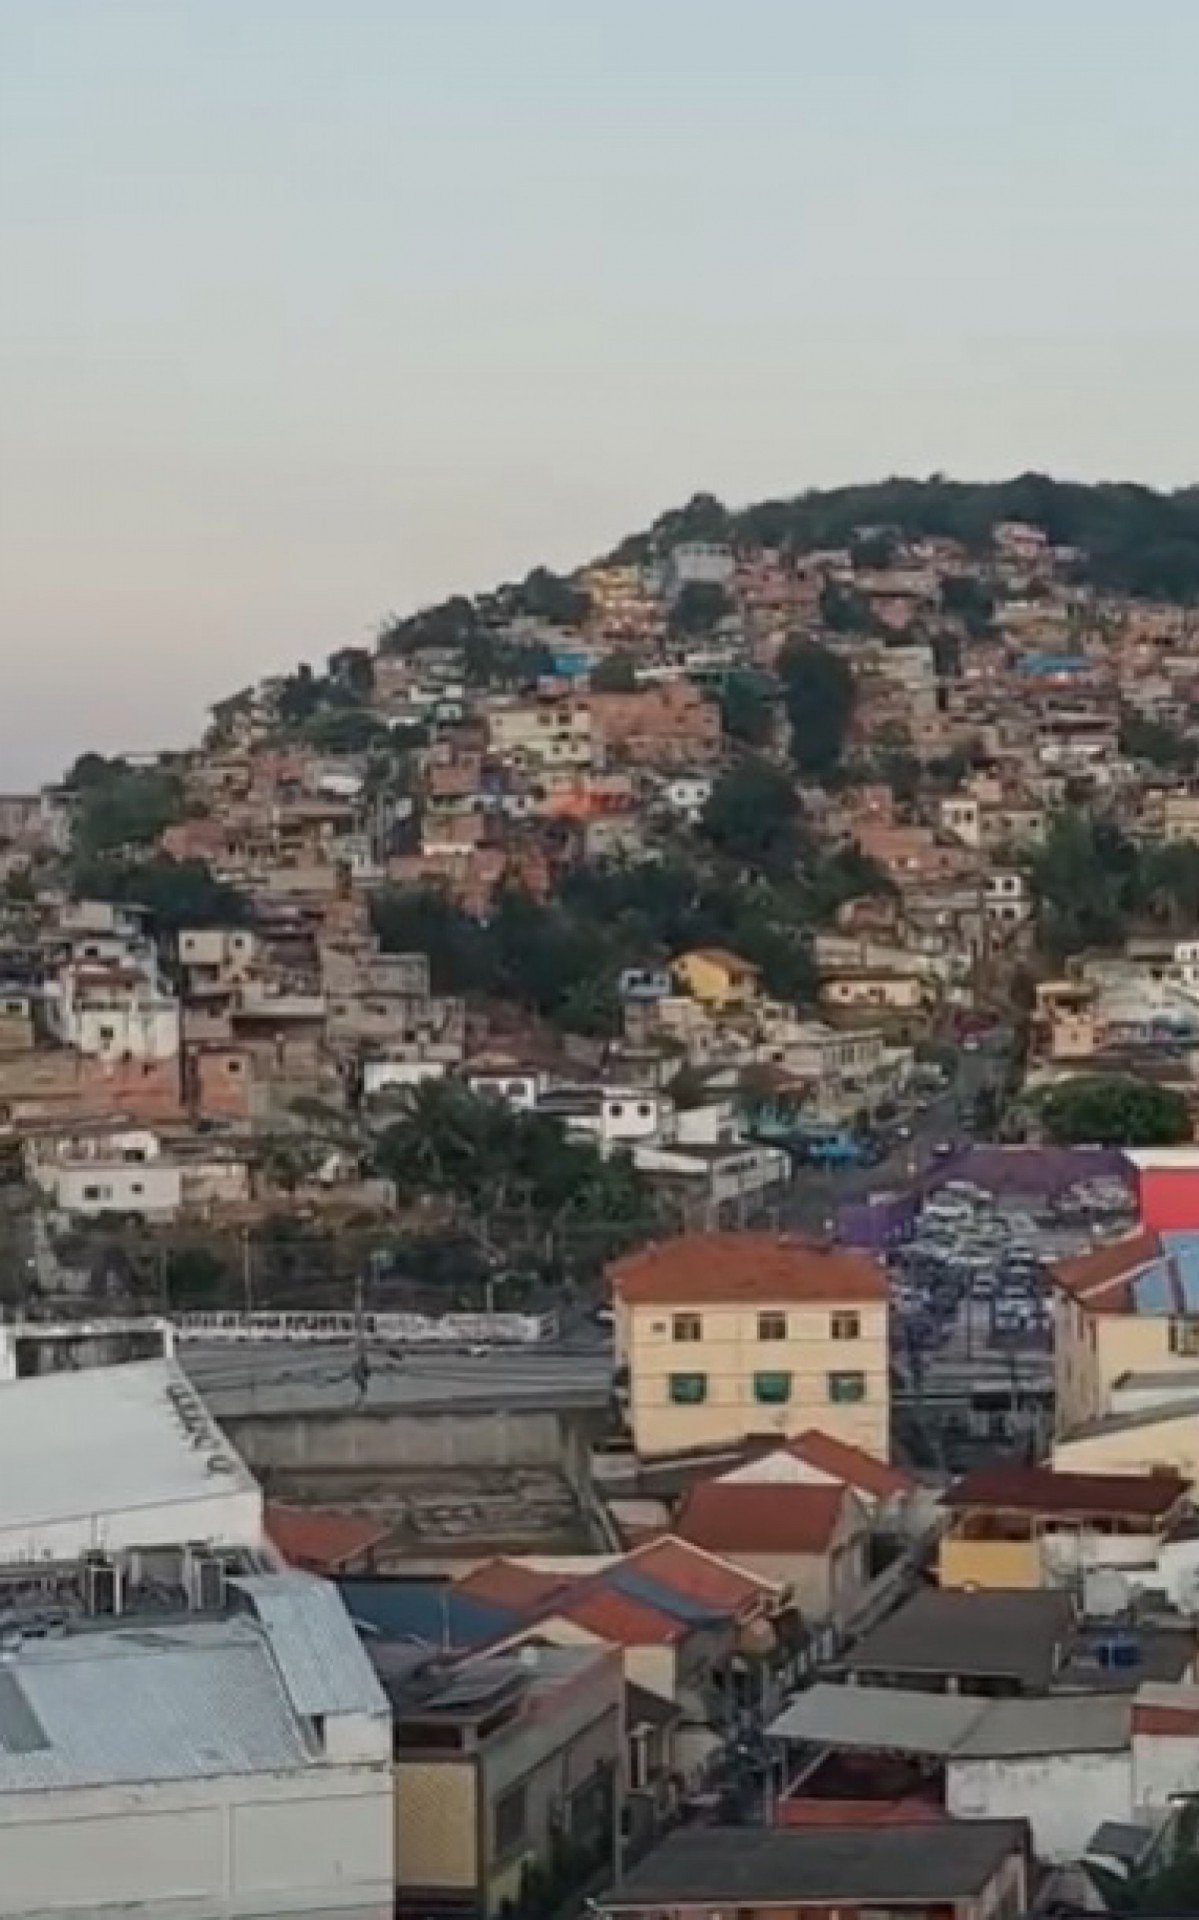 Moradores vivem rotina de violência e medo devido aos confrontos no Morro do Fubá - Reprodução/Redes sociais